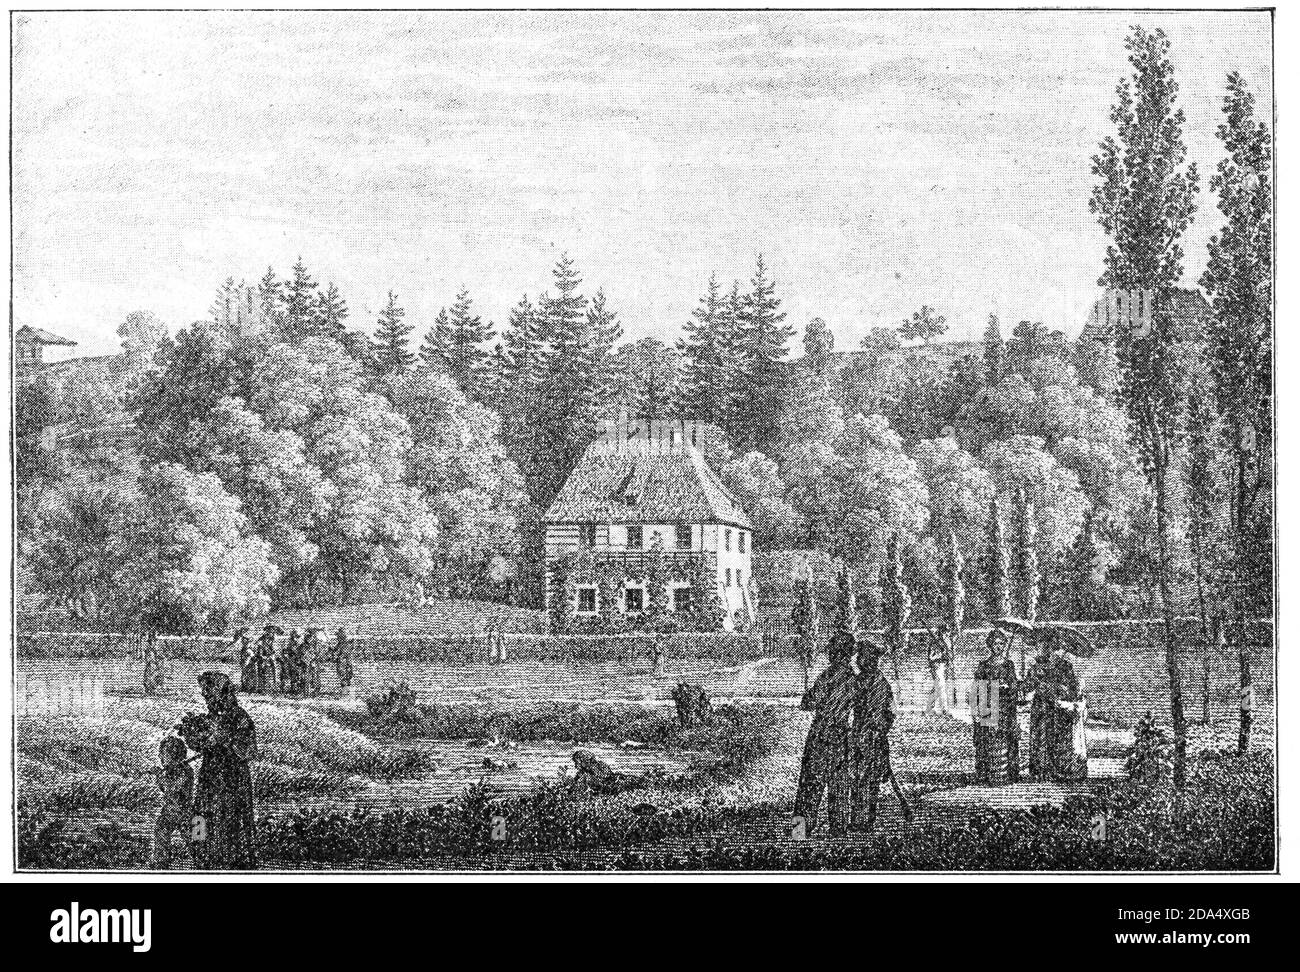 Goethes Gartenhaus in Weimar, Deutschland, 1828. Illustration des 19. Jahrhunderts. Weißer Hintergrund. Stockfoto